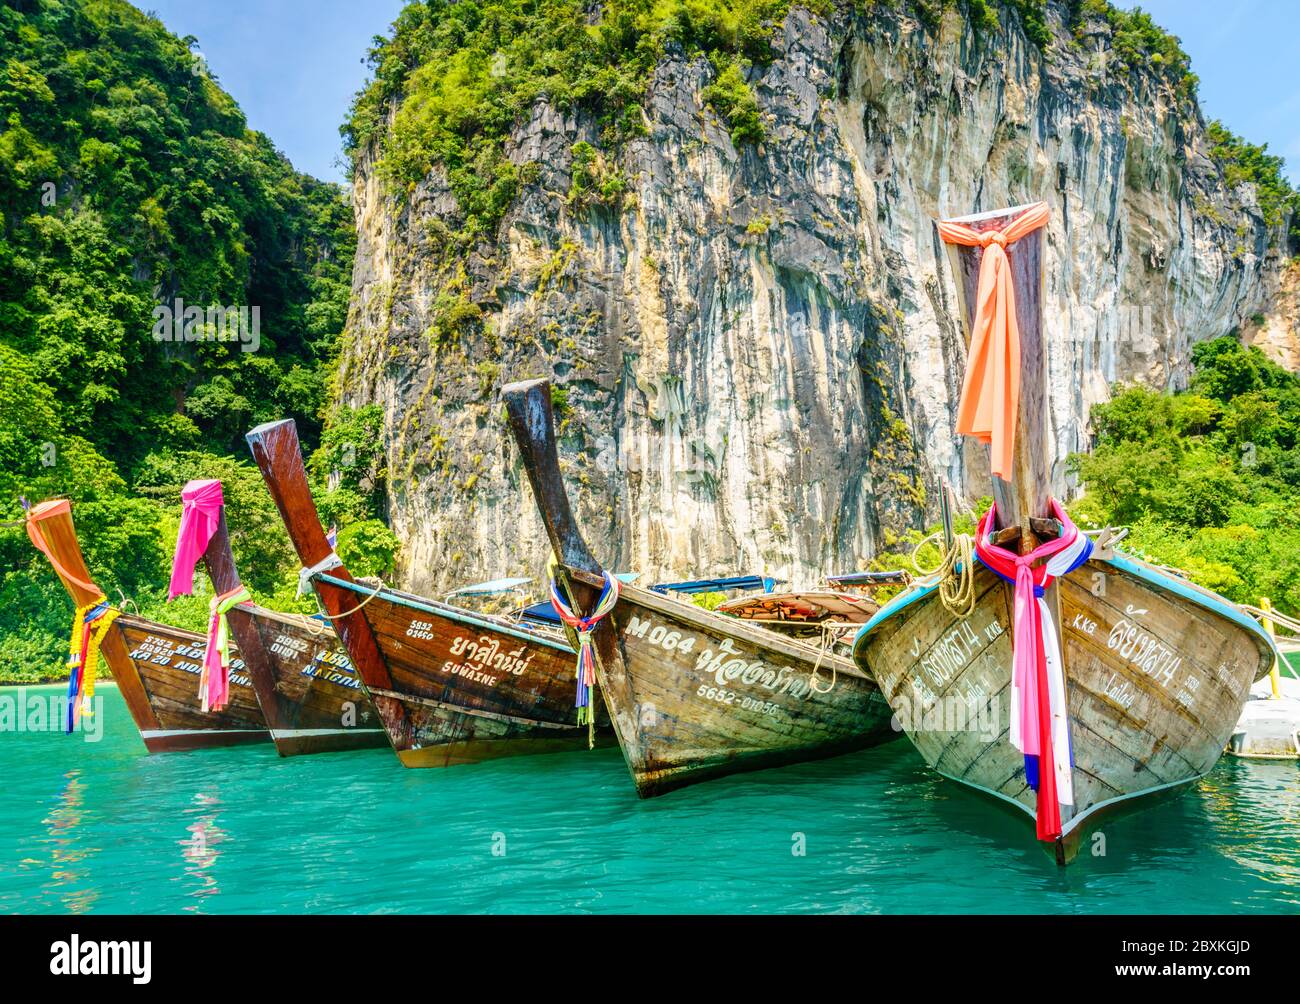 Krabi, Thailandia, 7 novembre 2017: Barche a motore tradizionali tailandesi su un'isola nel Mare delle Andamane a Krabi, Thailandia Foto Stock